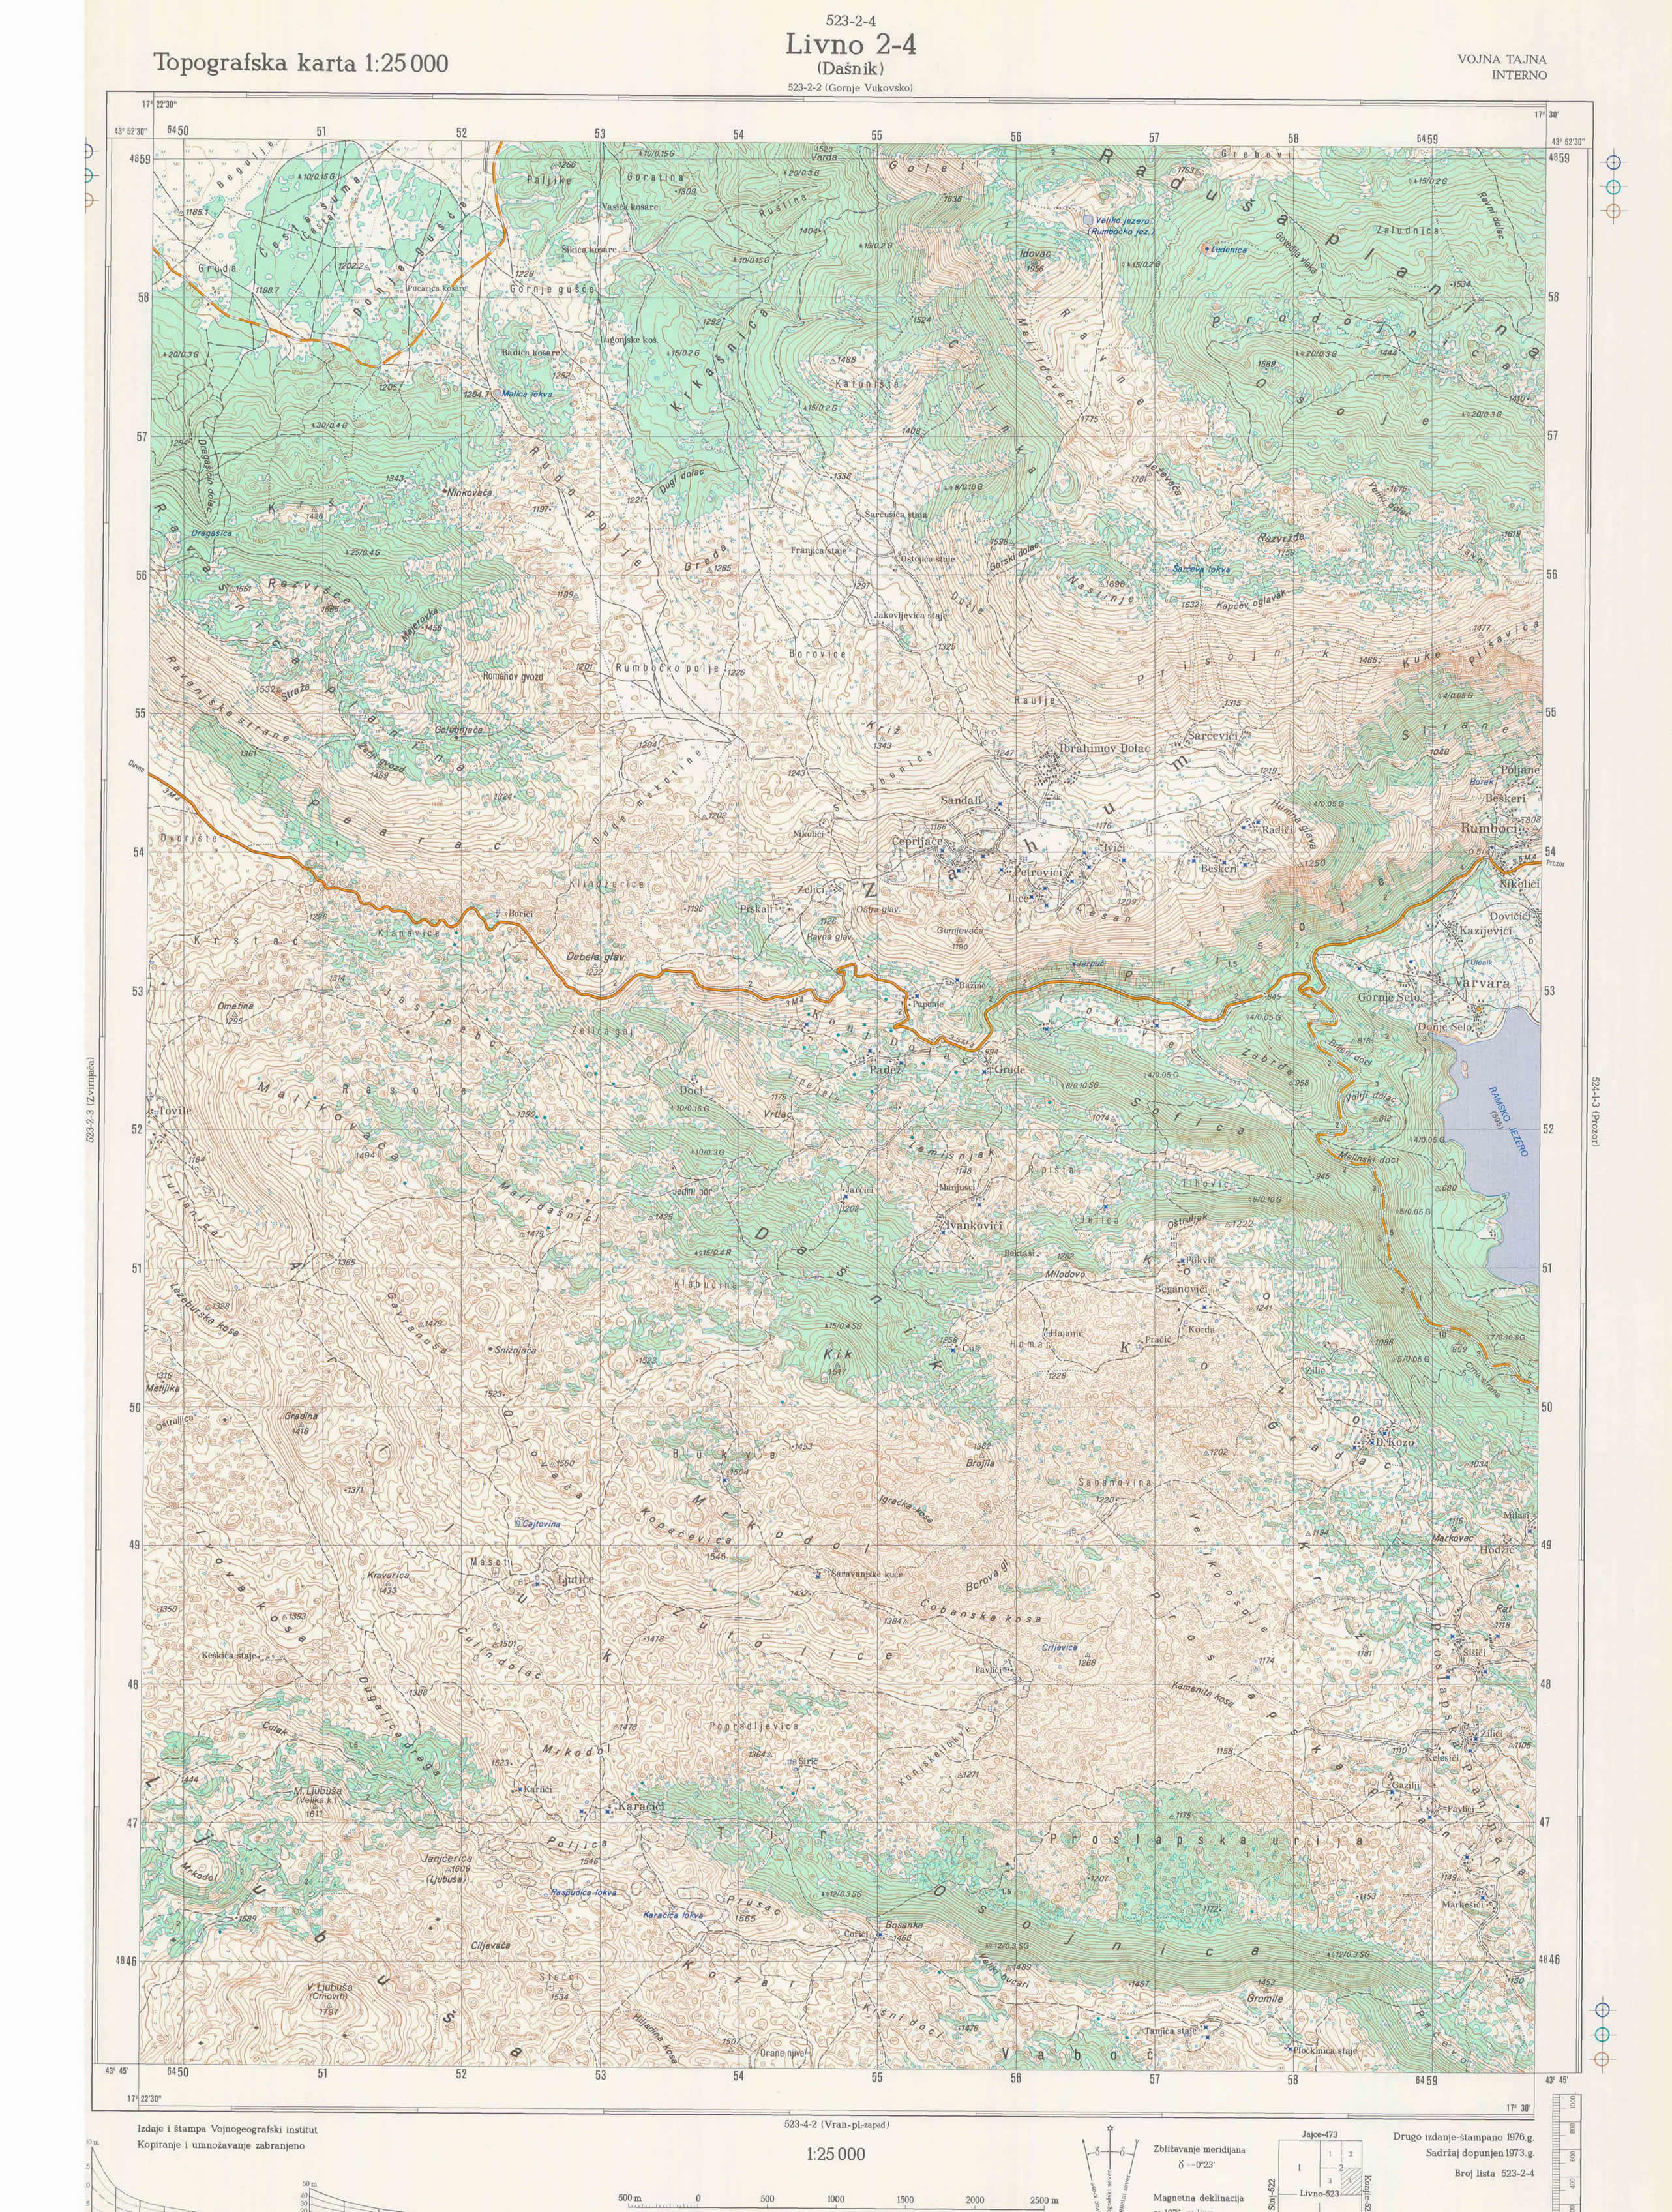  topografska karta BiH 25000 JNA  Dasnik